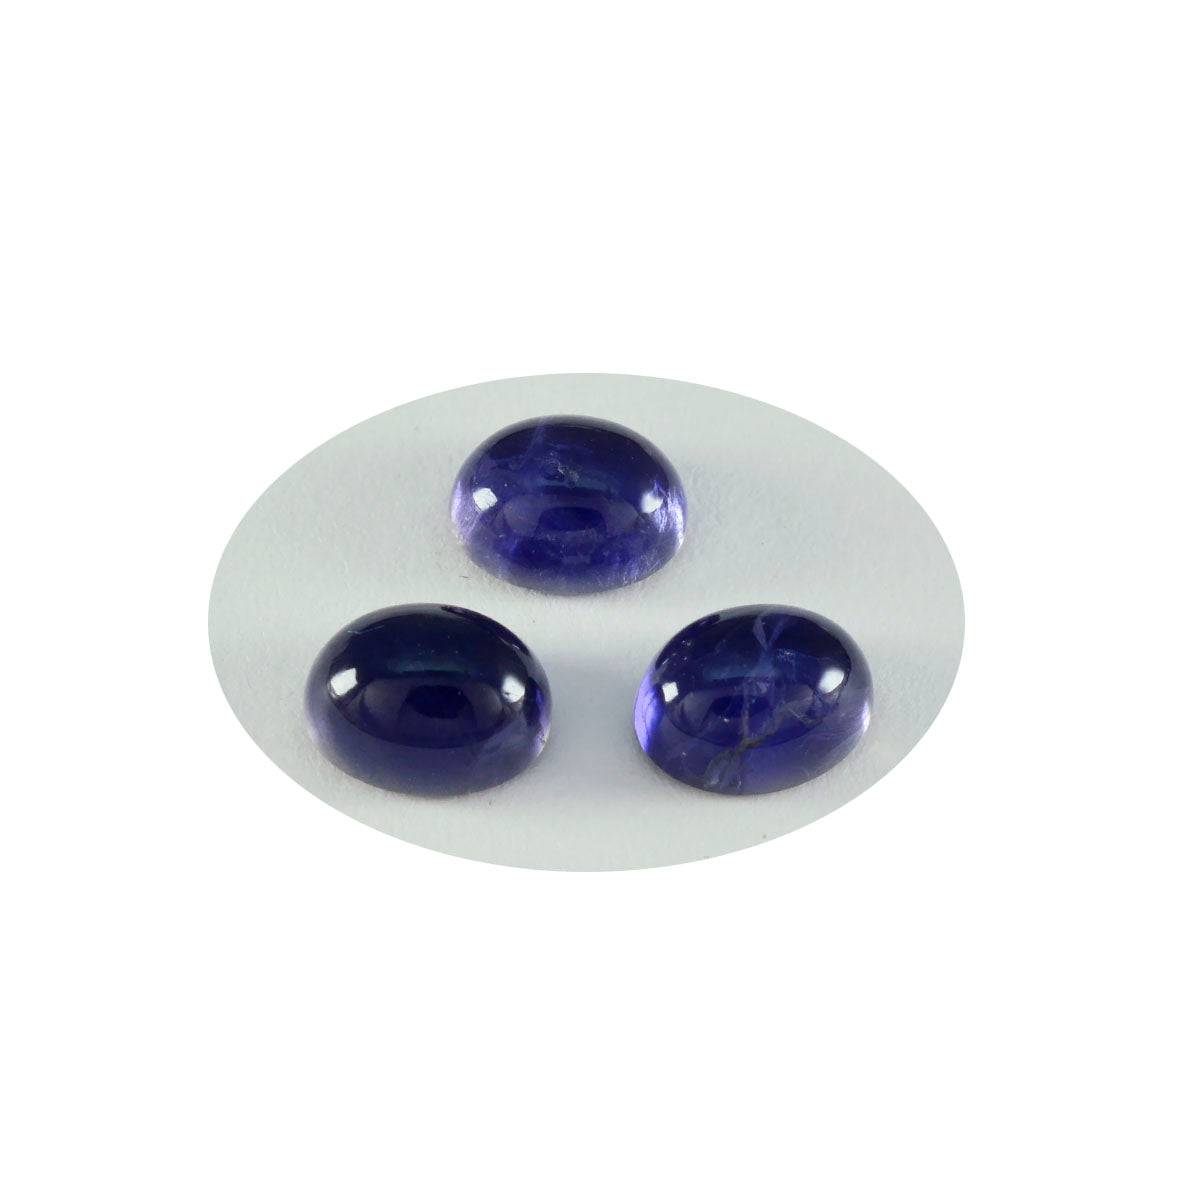 riyogems 1 шт. синий иолит кабошон 10x12 мм овальной формы красивый качественный свободный камень